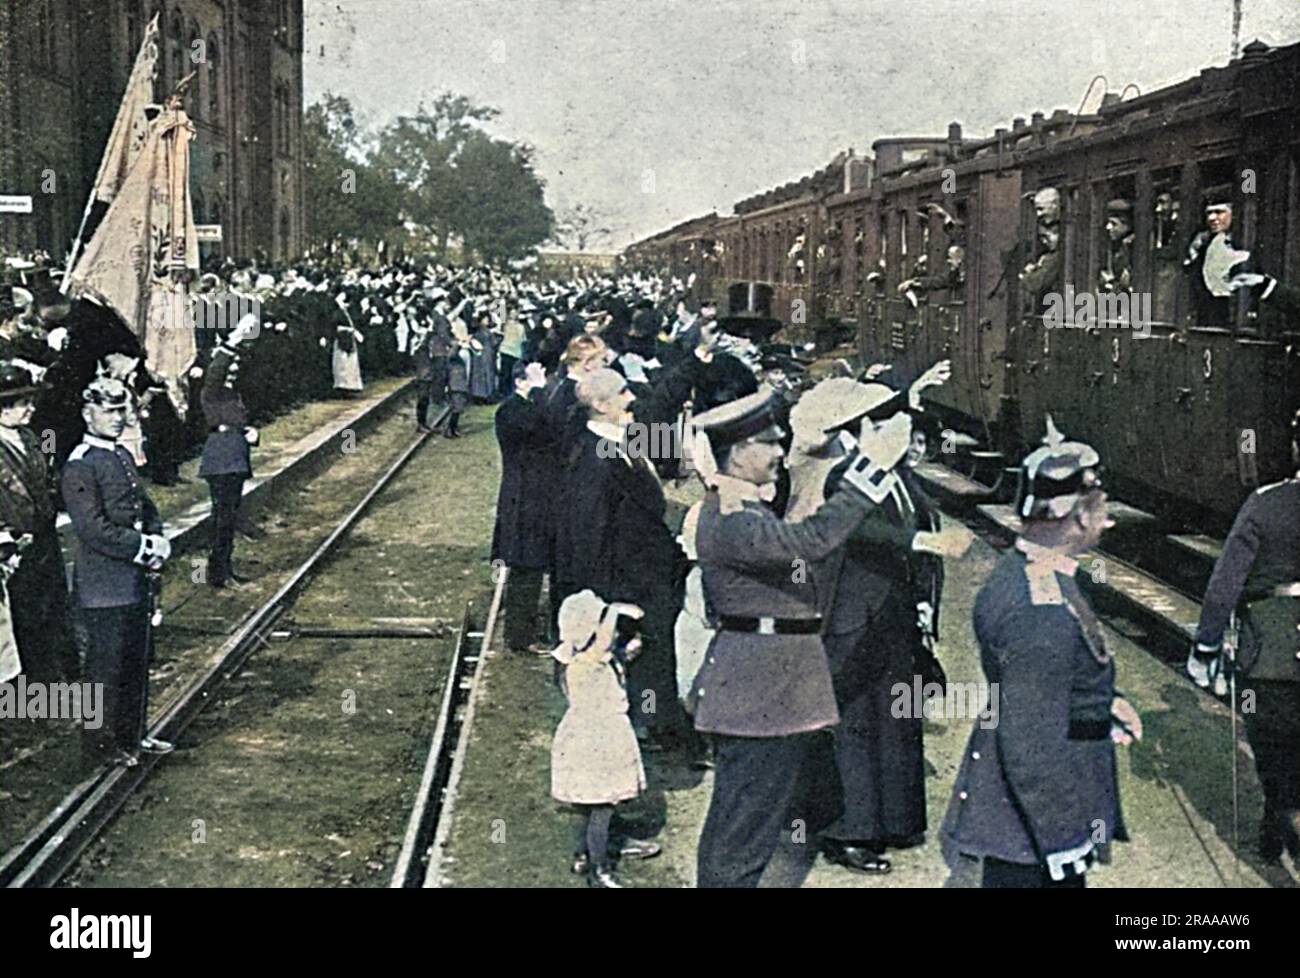 Après la déclaration de guerre contre la Russie le 1 août, les réservistes allemands répondent à l'appel de mobilisation et embarquent dans un train pour les amener dans la zone de guerre. Date : août 14 Banque D'Images